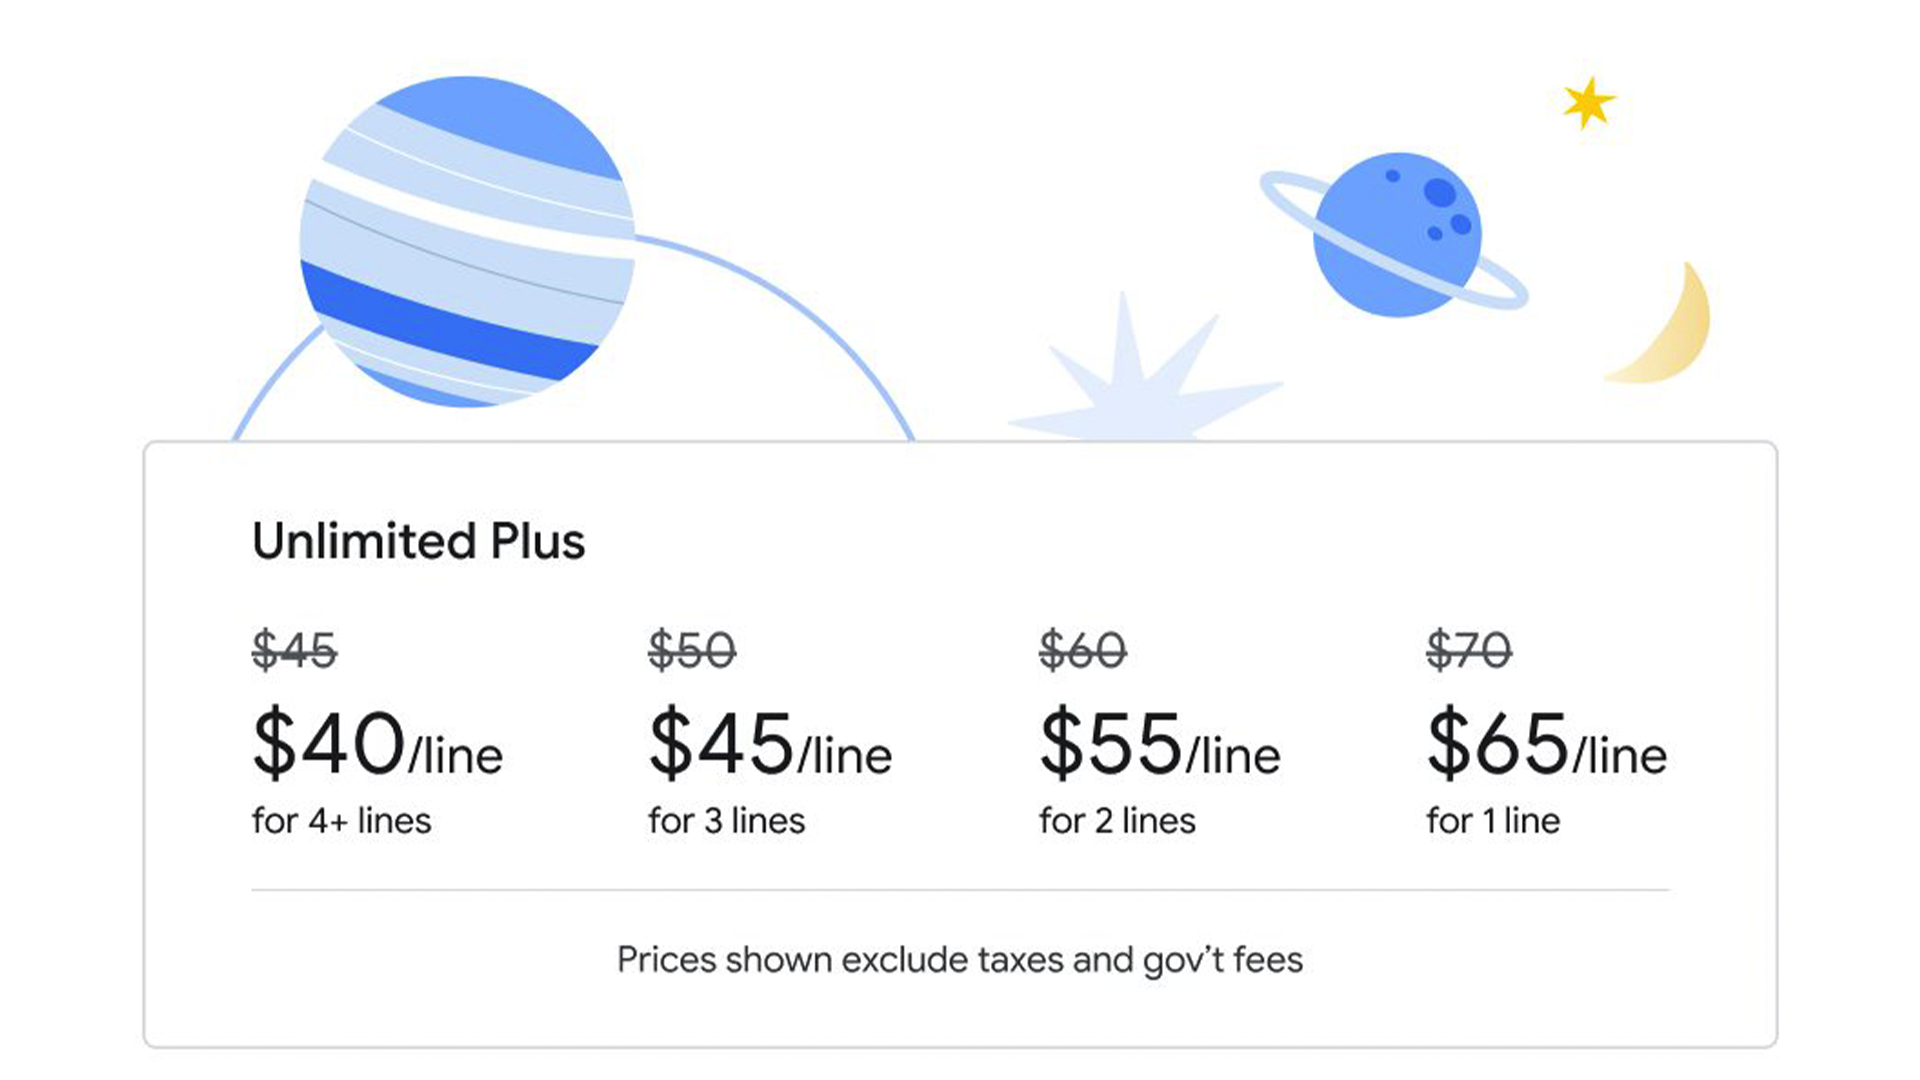 Les nouveaux tarifs illimités Plus de Google Fi commencent à 65 $ pour une ligne.